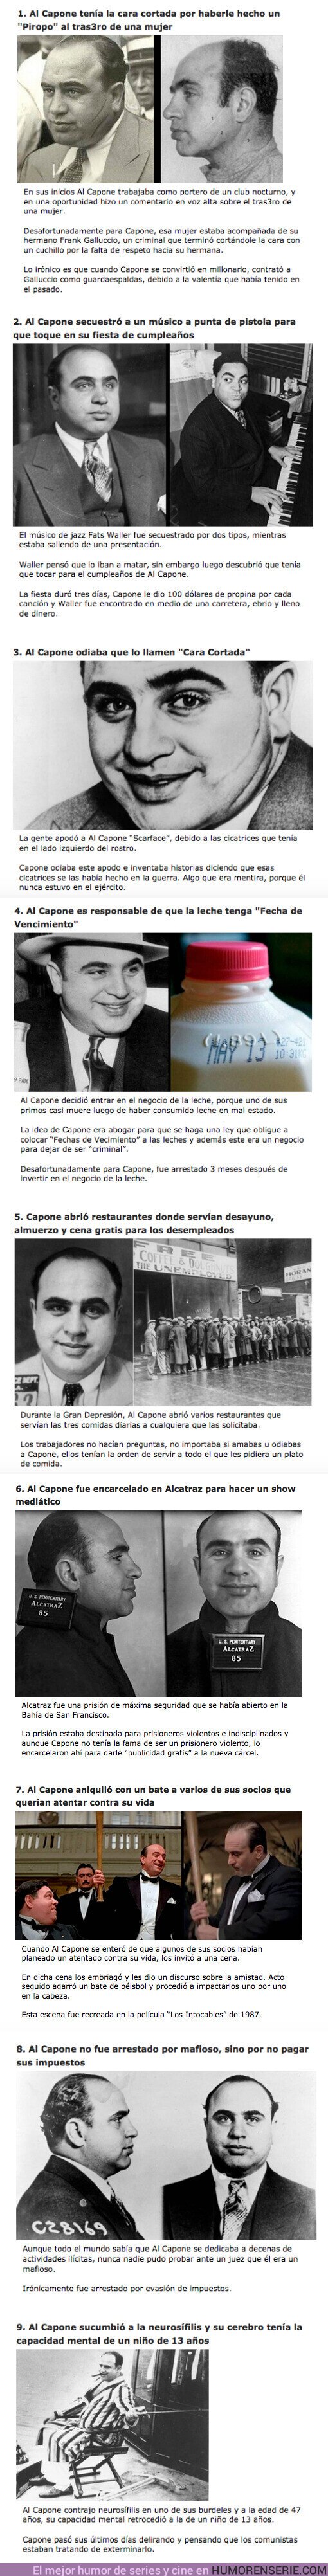 67494 - GALERÍA: 9 Curiosidades sobre el criminal más famoso de la historia: “Al Capone”